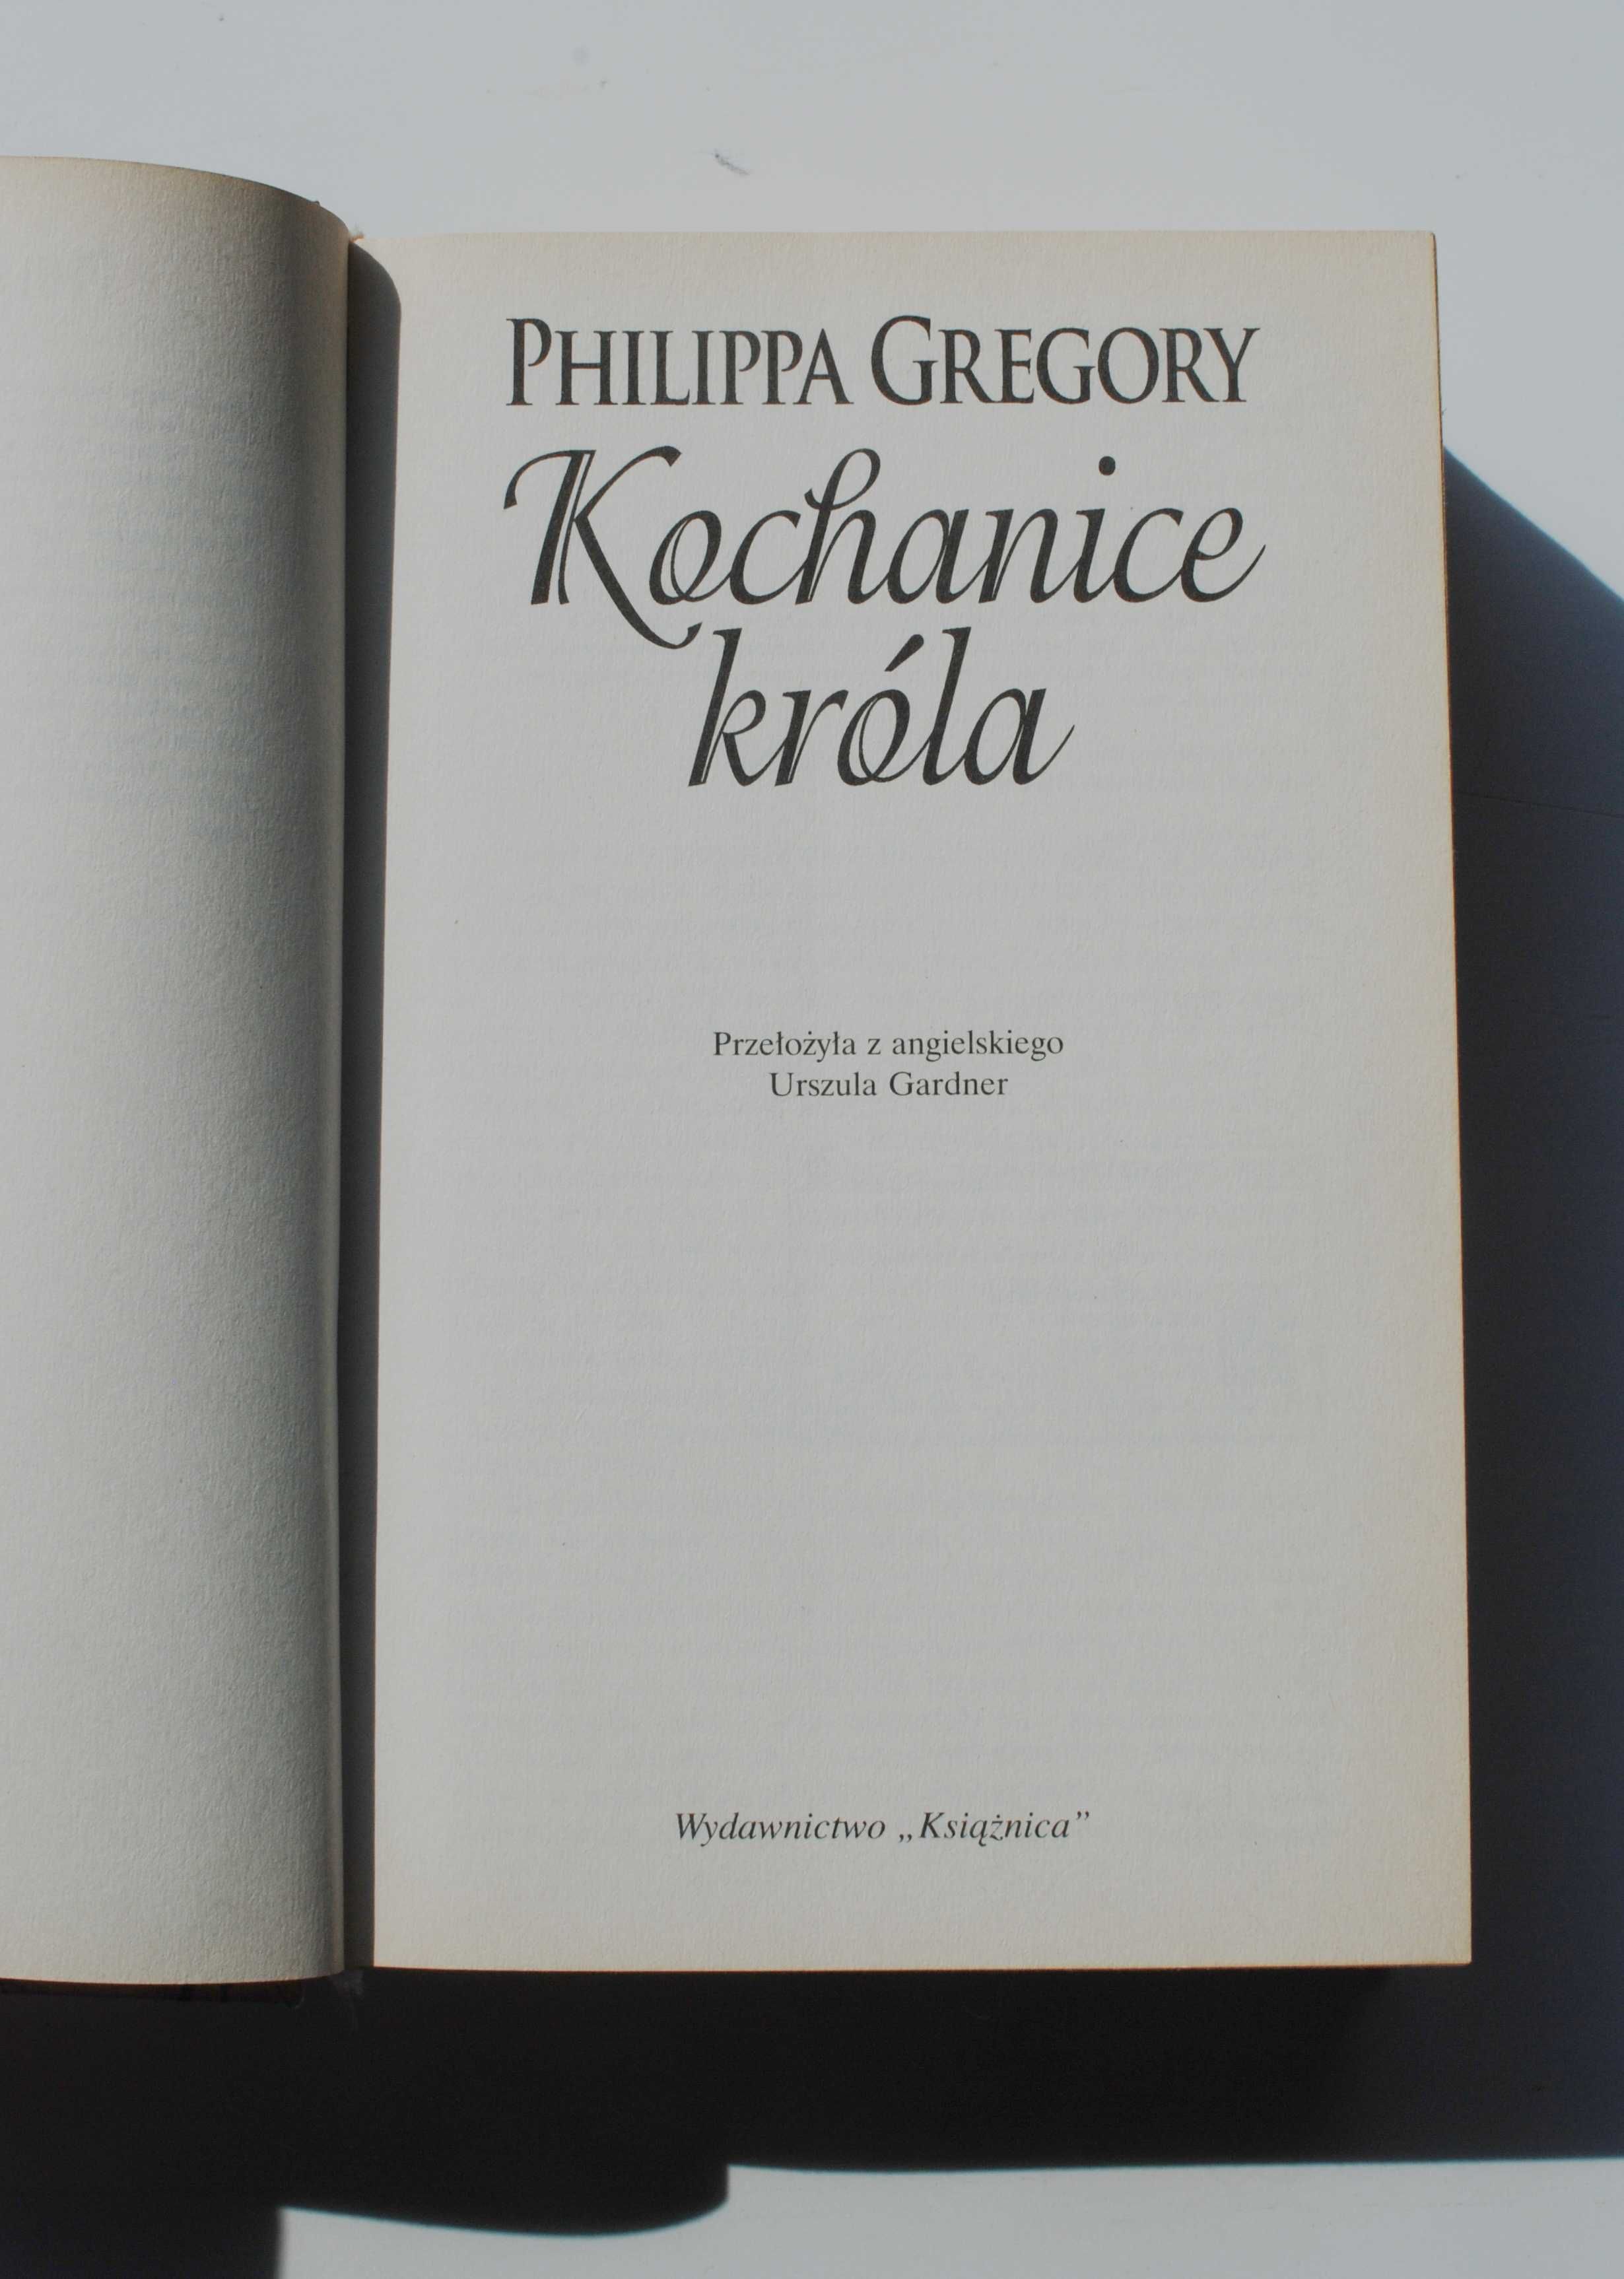 Kochanice króla. Philippa Gregory